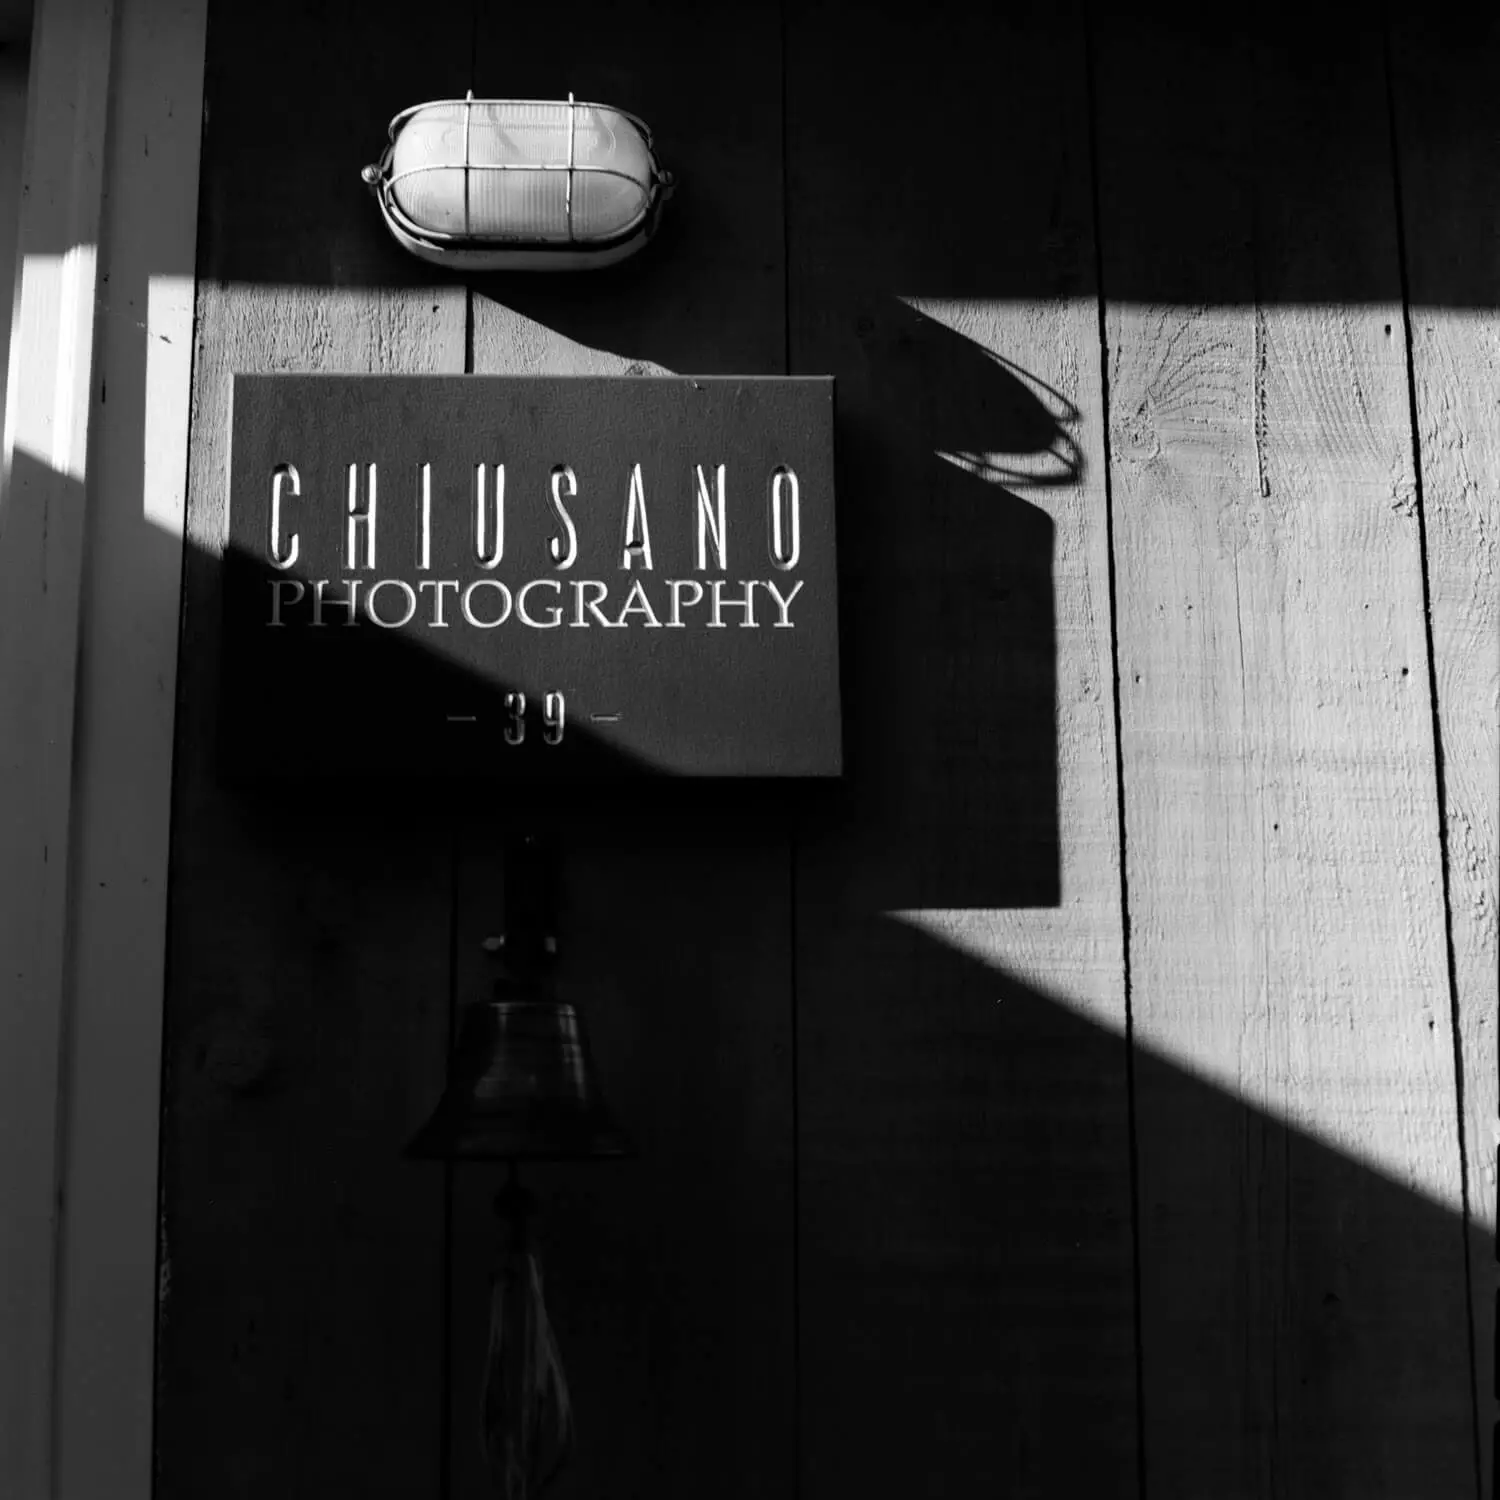 Chiusano Photography sign Fortes diagonales - peuvent souvent être mieux traitées dans un cadre carré.  Tourné sur un Rollei 3.5F avec un film Kodak T-MAX 400